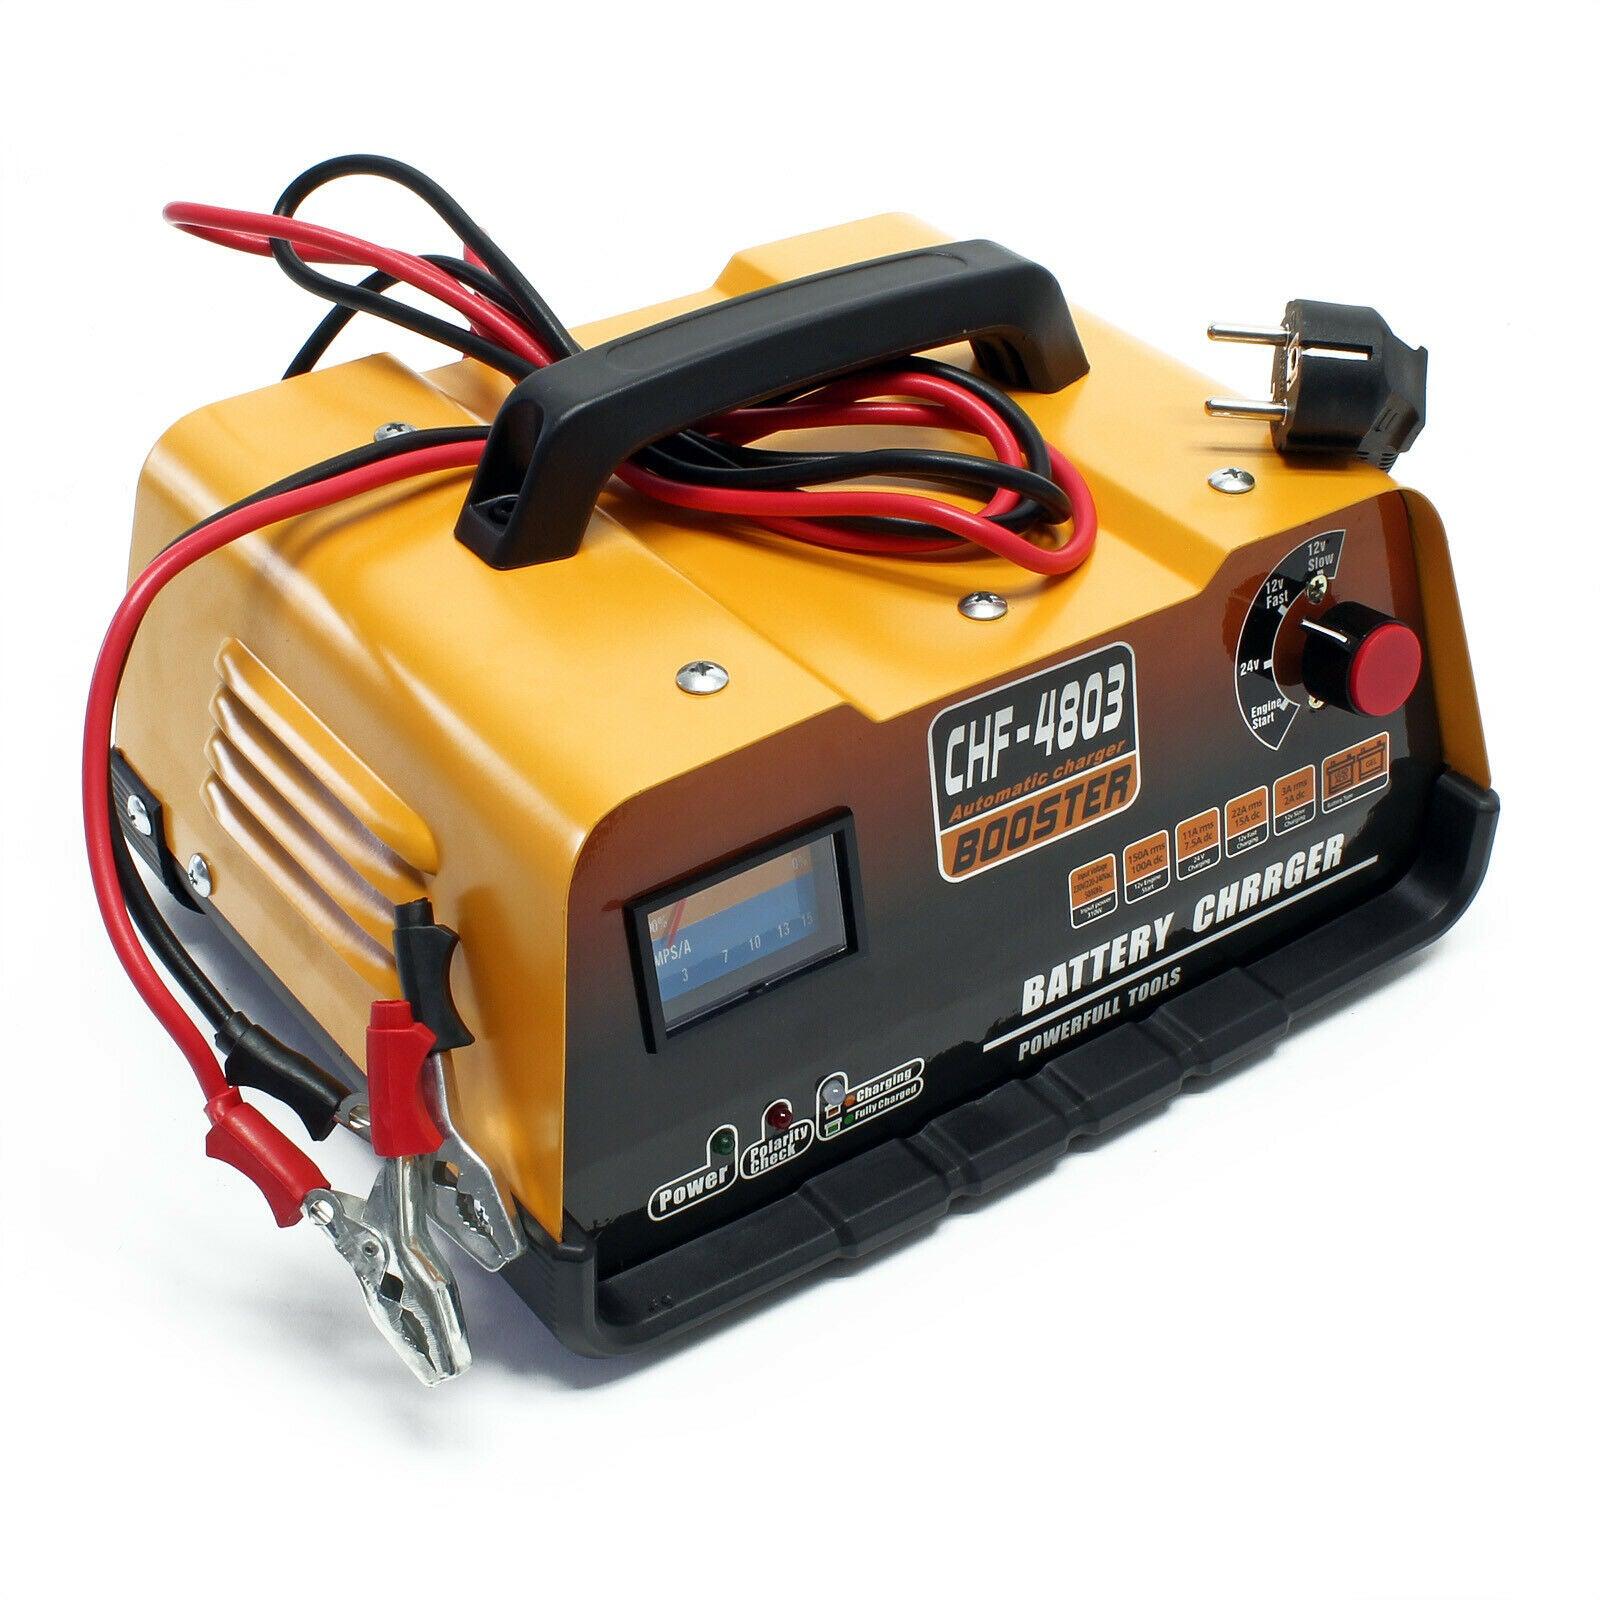 Batterie et chargeur BOSCH PROFESSIONAL - Démarreur - Avec 2 x GBA